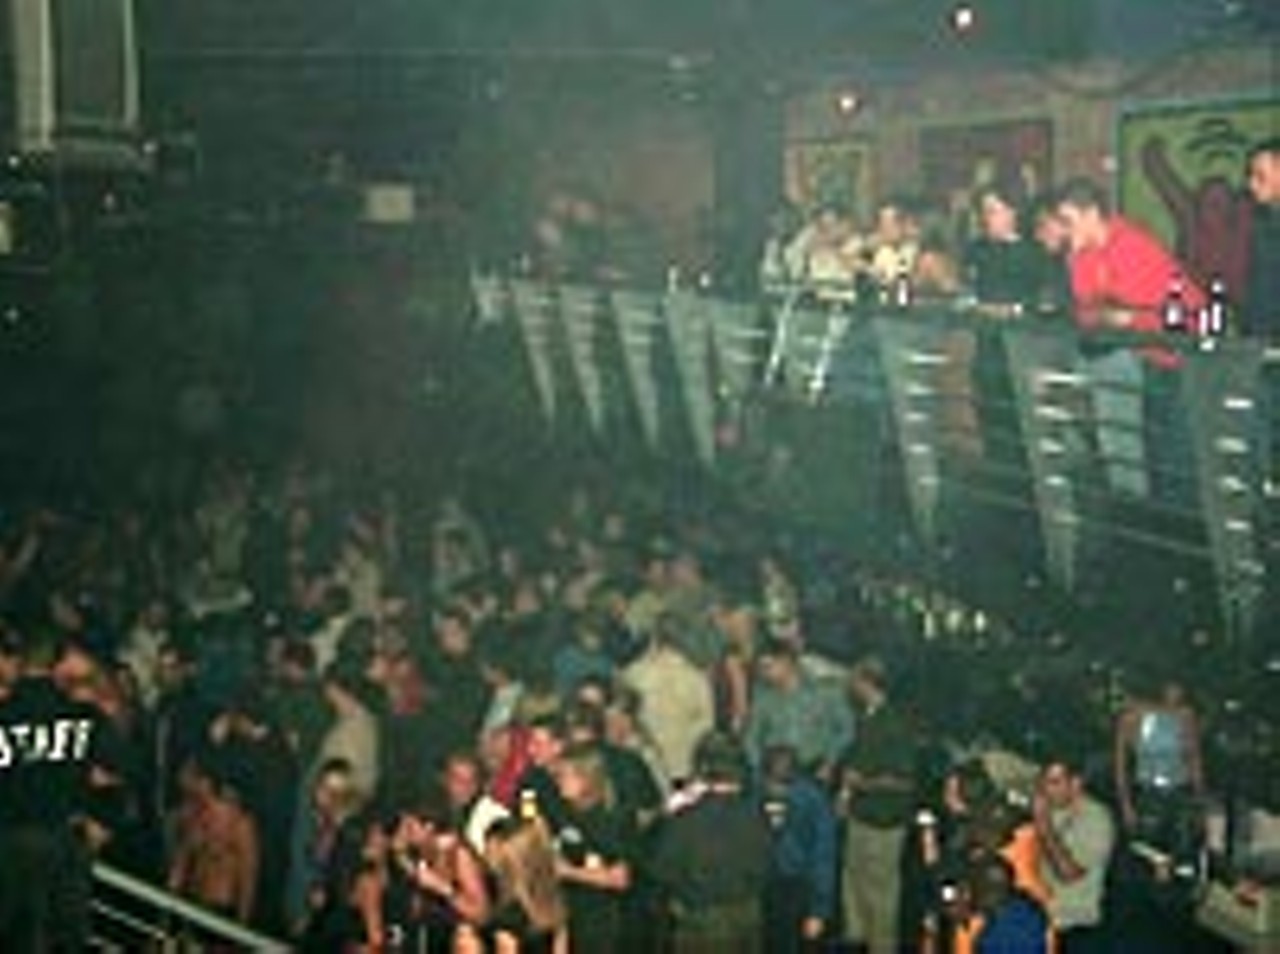 Club Space Nightclub